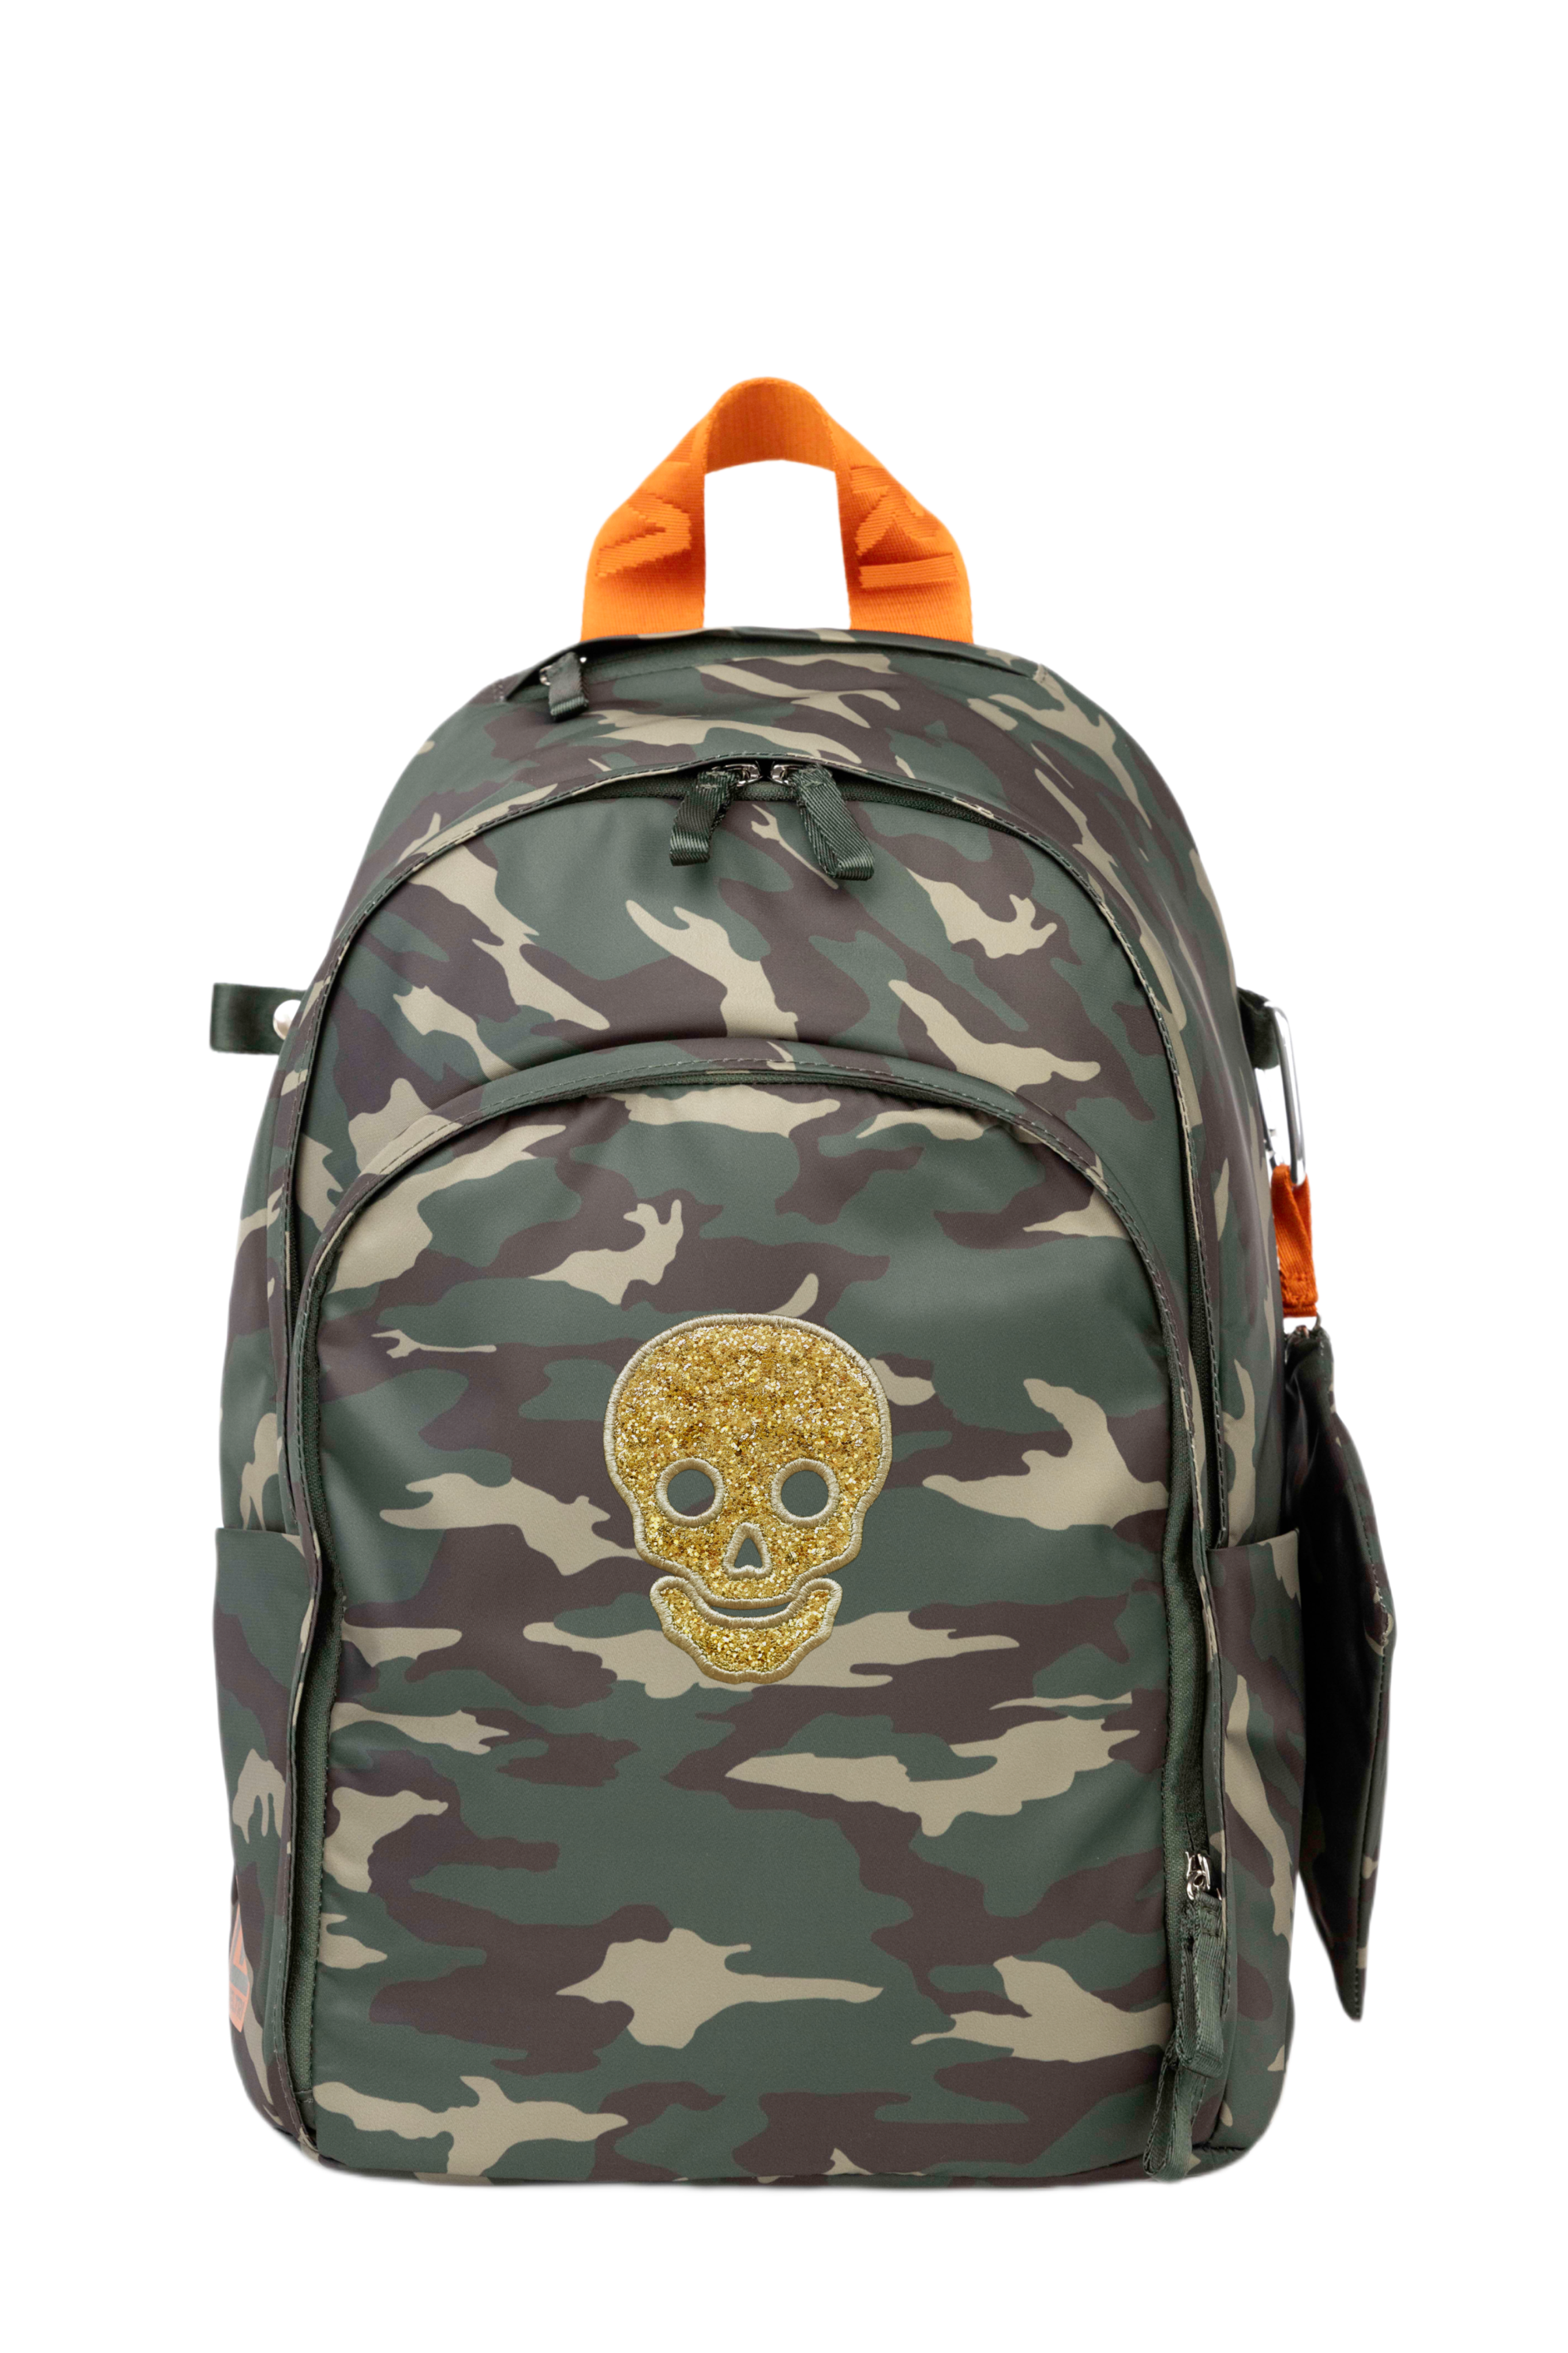 Novelty Backpack “Skull”